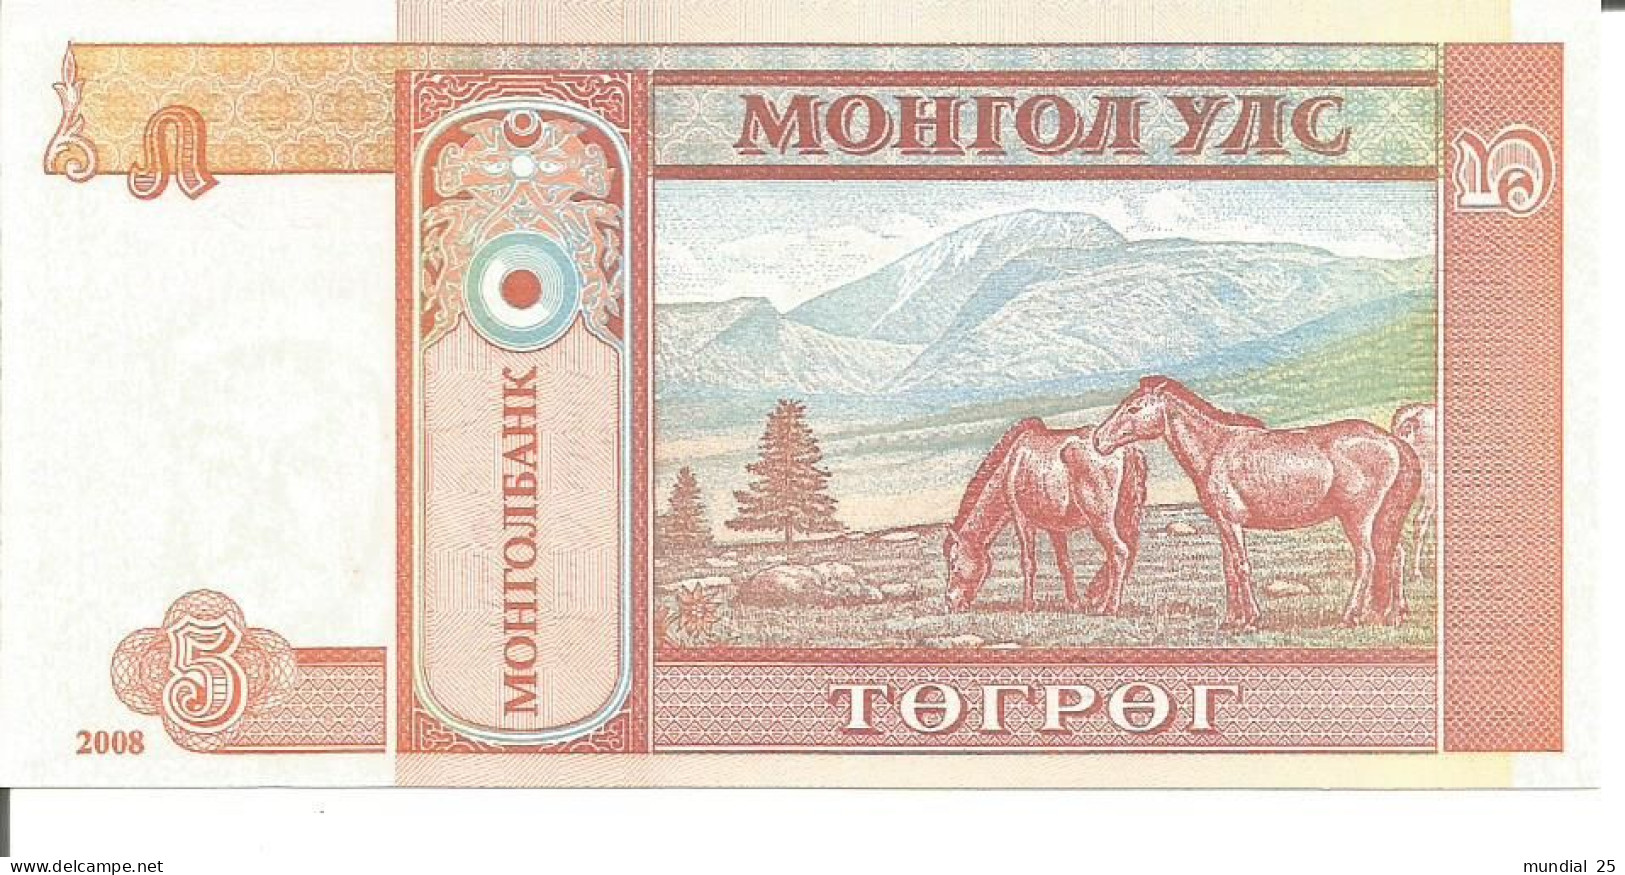 3 MONGOLIA NOTES 5 TUGRIK 2008 - Mongolia